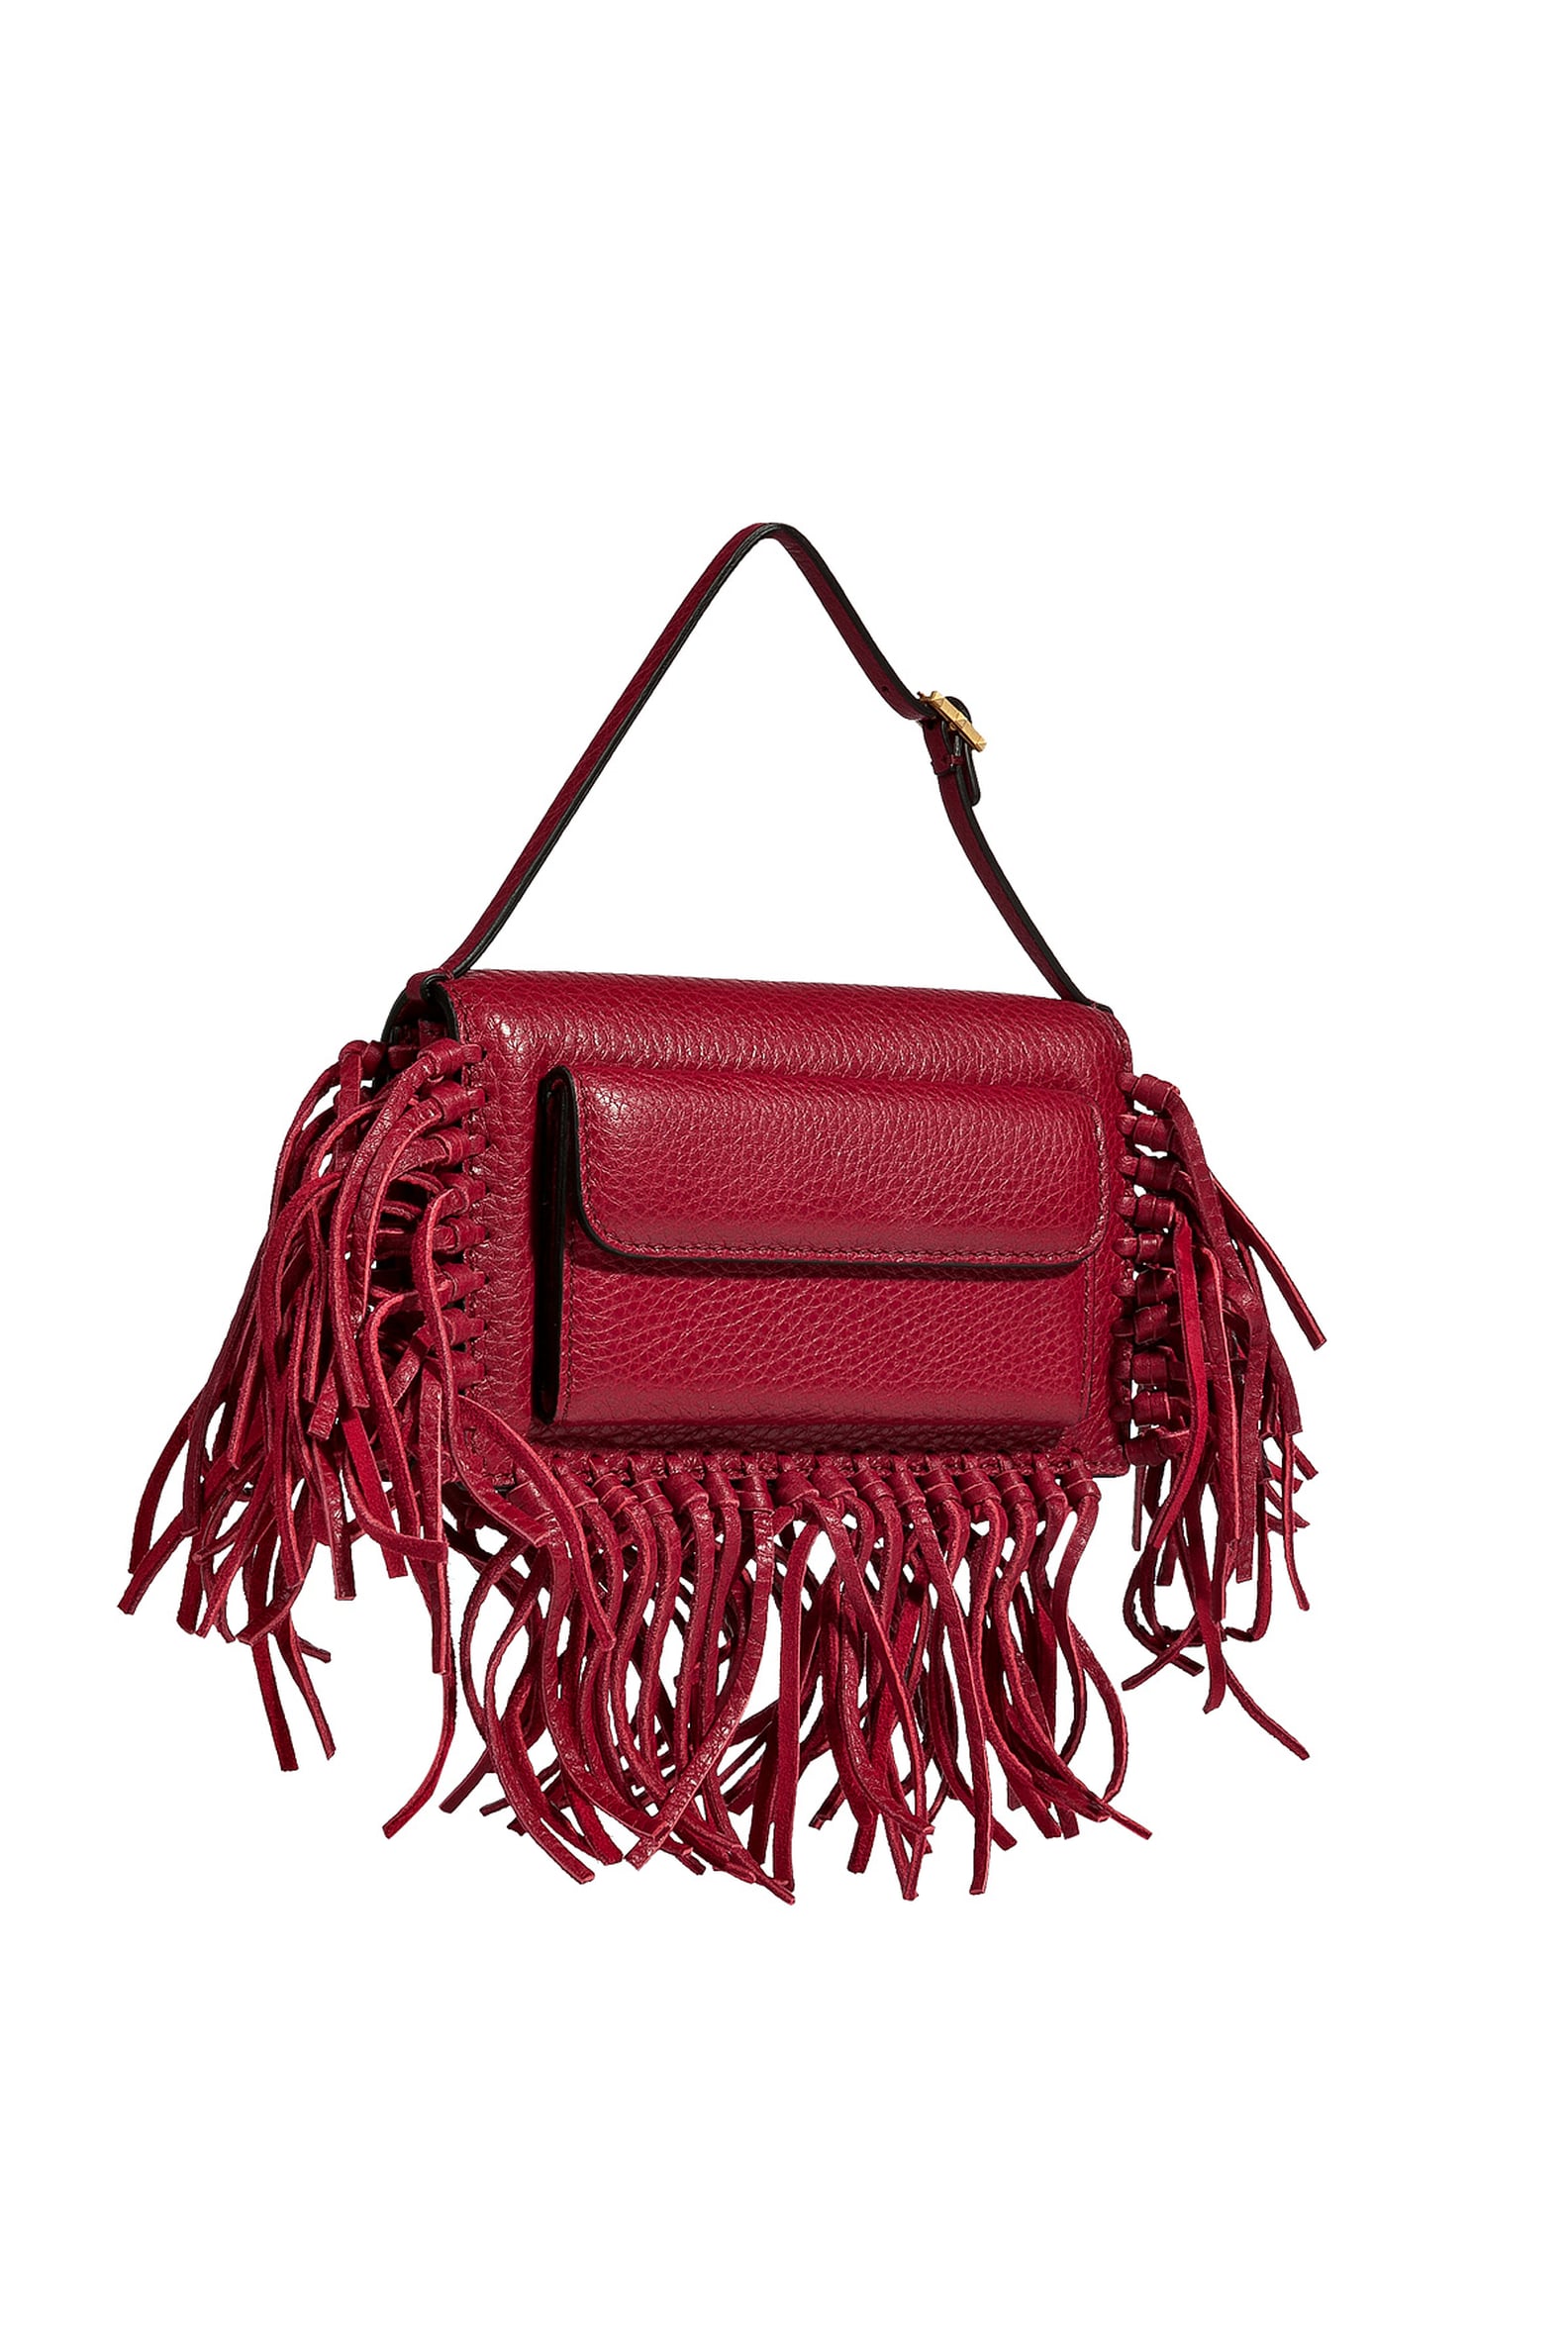 Fall Bags 2014 | POPSUGAR Fashion